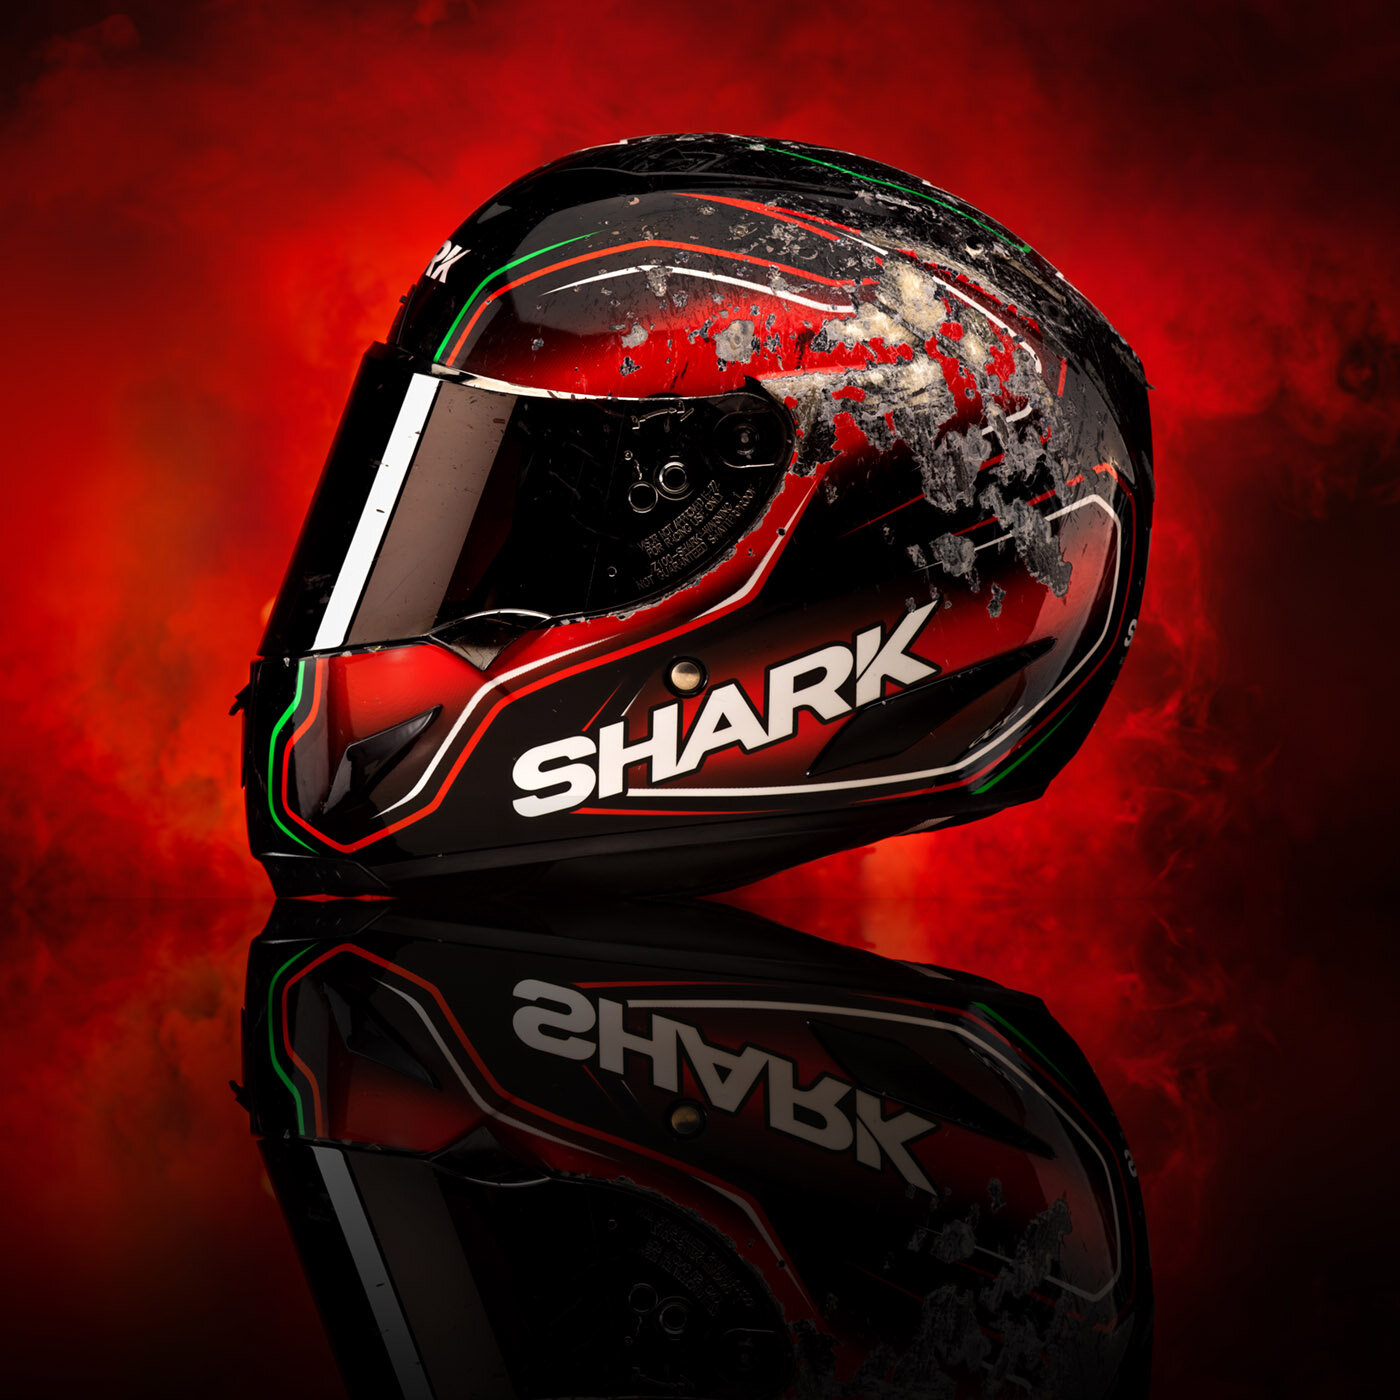 shark_helmets_product_photography.jpg